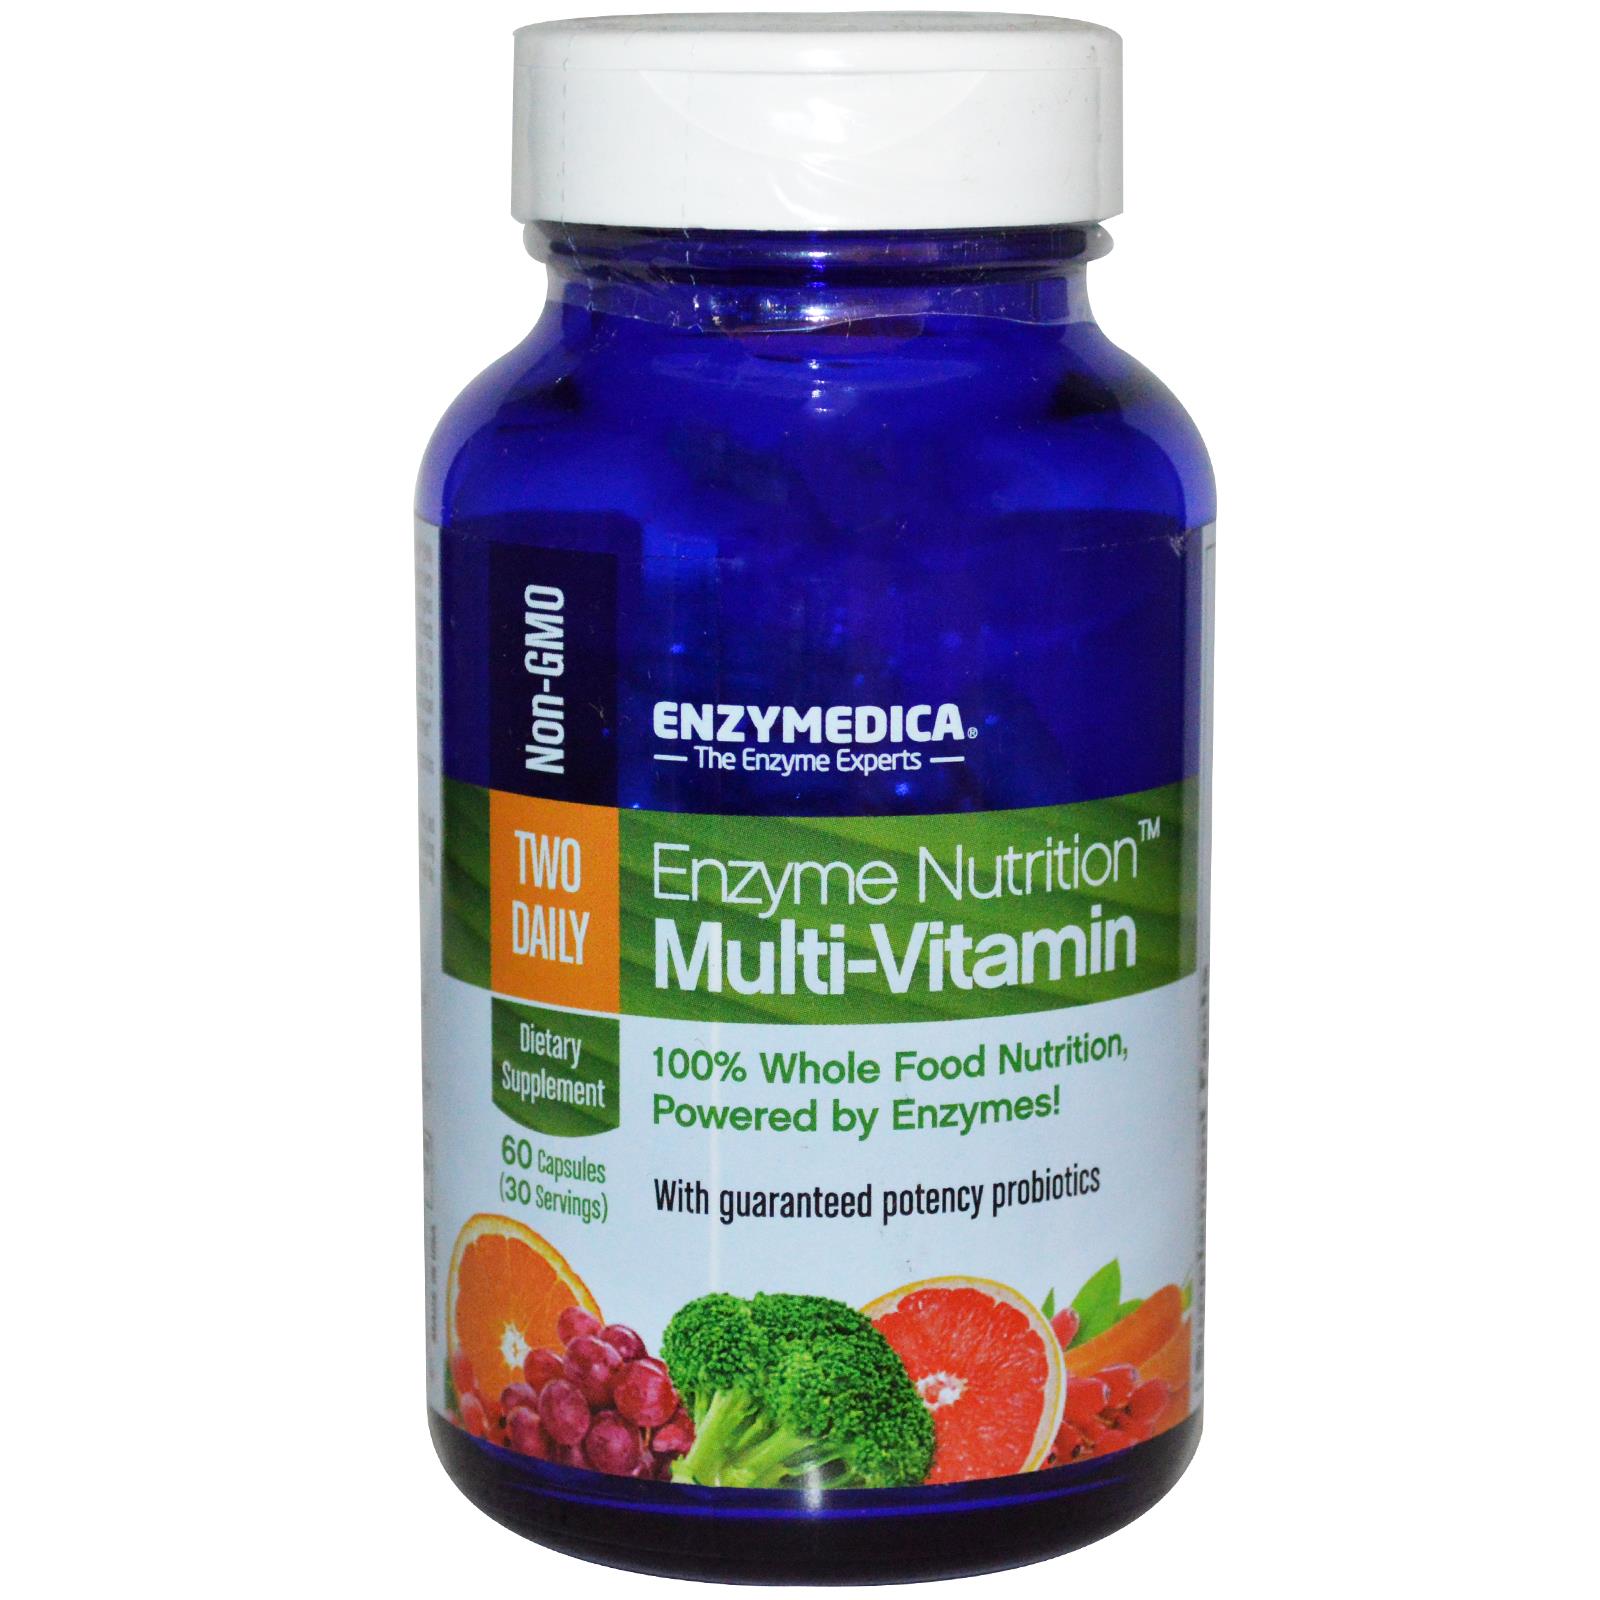 Enzymedica Enzyme Nutrition Multi-Vitamin